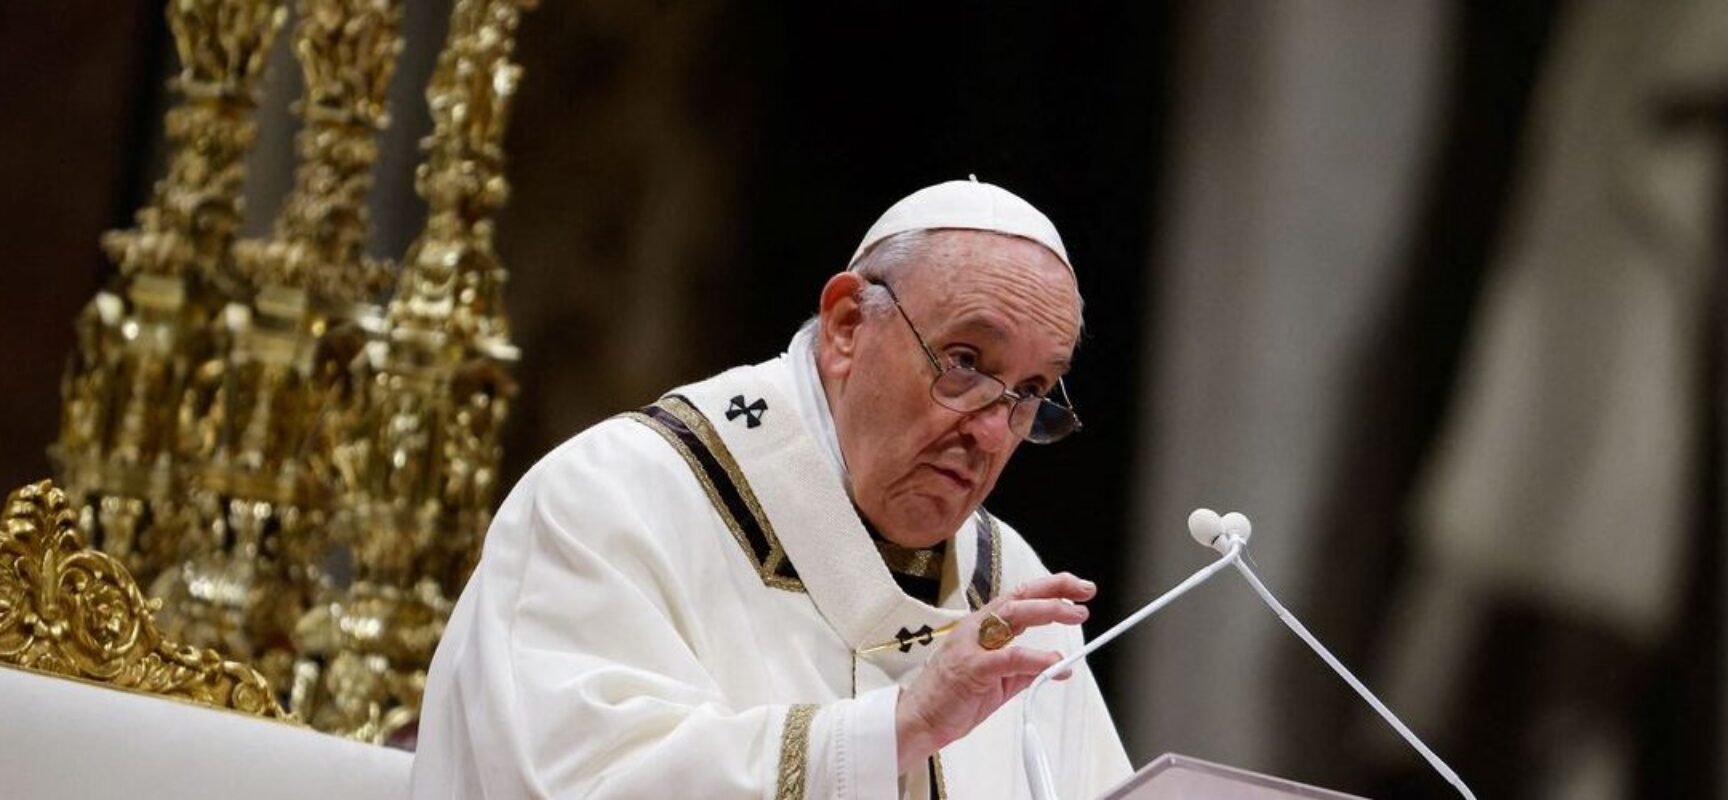 Até freiras e padres veem pornografia, diz papa Francisco em alerta sobre internet